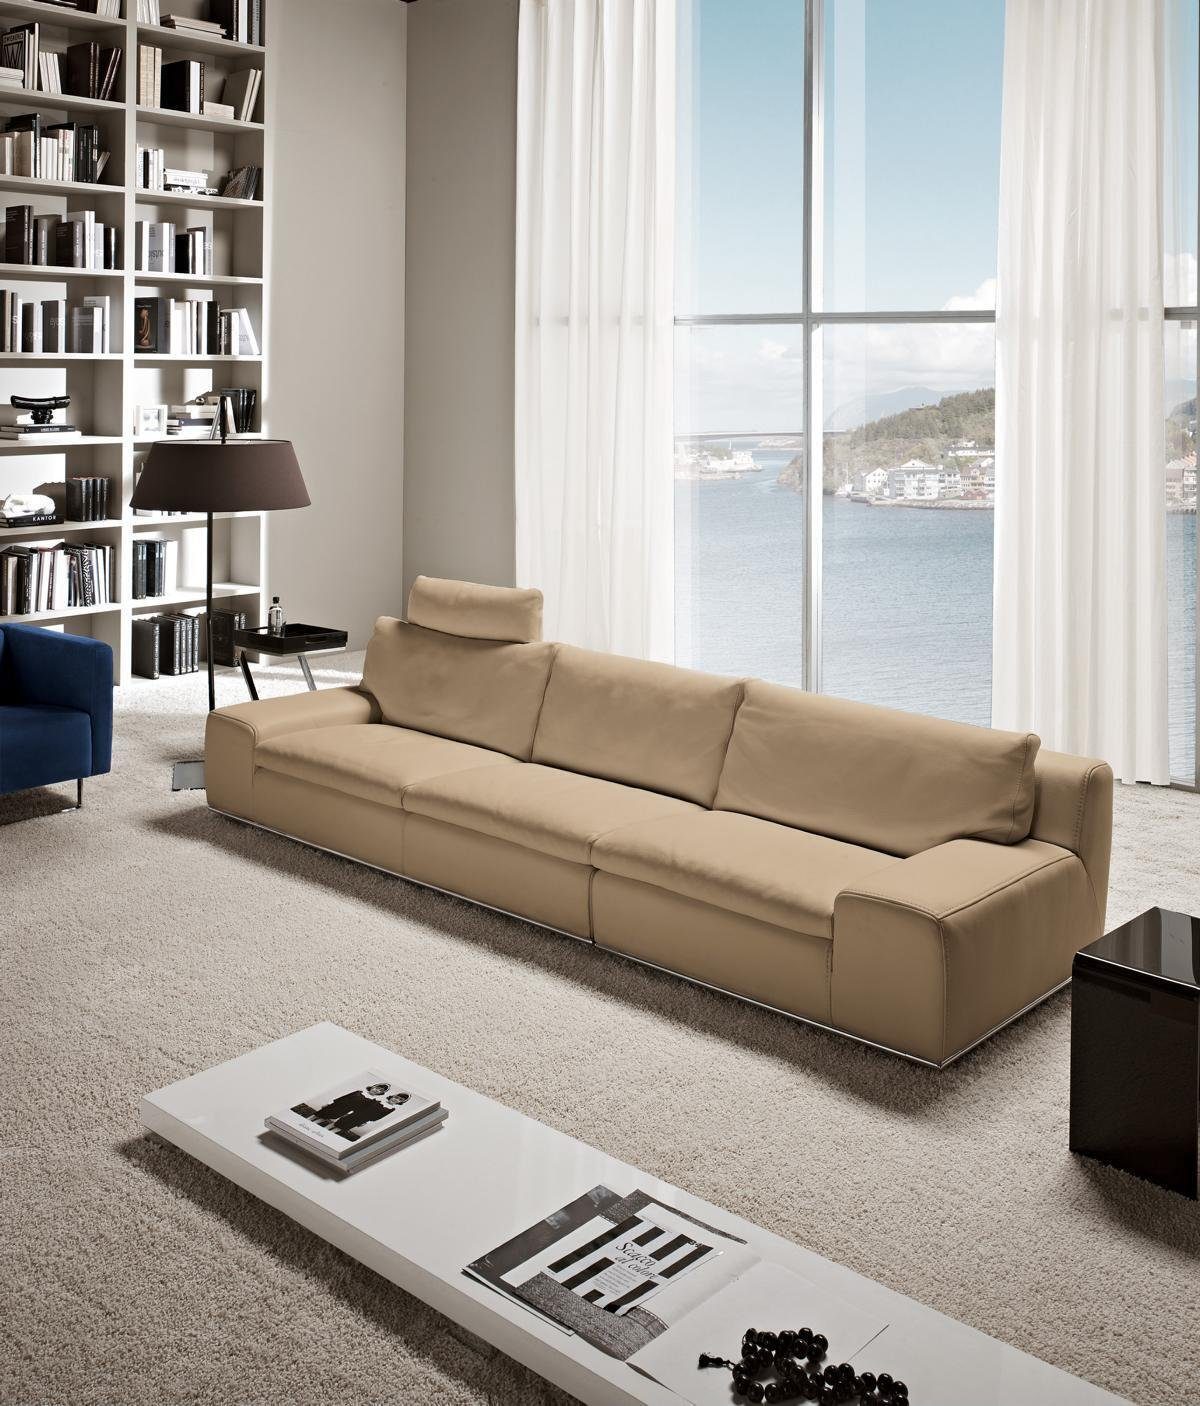 JVmoebel Sofa Sofa 4 Sitzer Sofas Viersitzer xxl Wohnzimmer Braun Big Design Couchen Couch